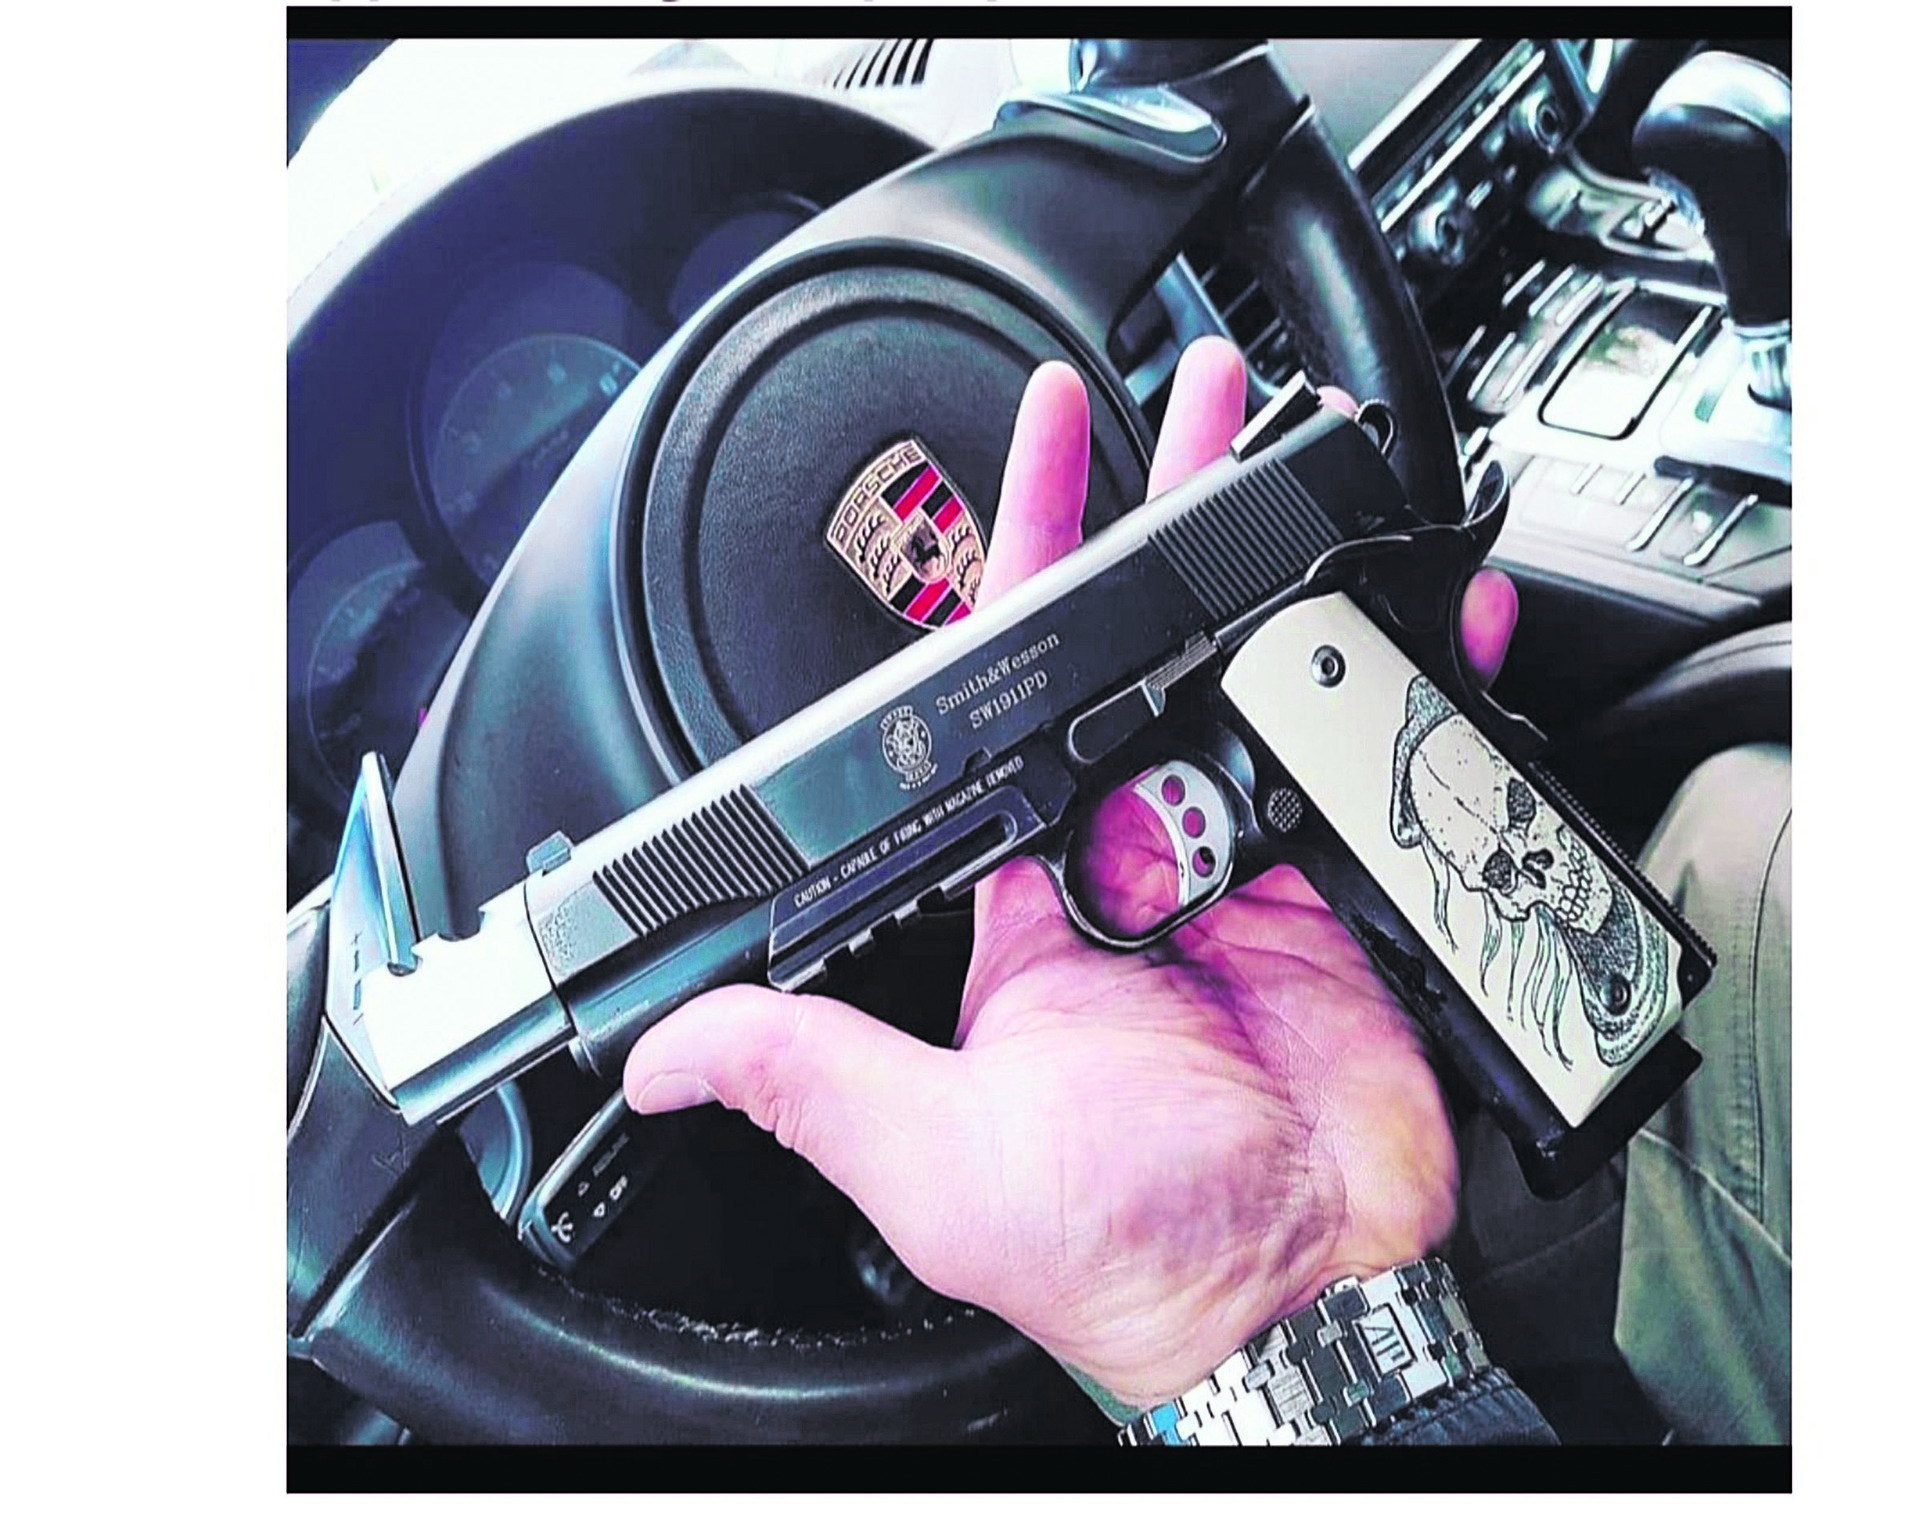 Ο «John Ripper» της ΕΛΑΣ: Η δράση του υπαρχιφύλακα που πουλούσε παράνομα όπλα στη μαύρη αγορά - ΕΛΛΑΔΑ